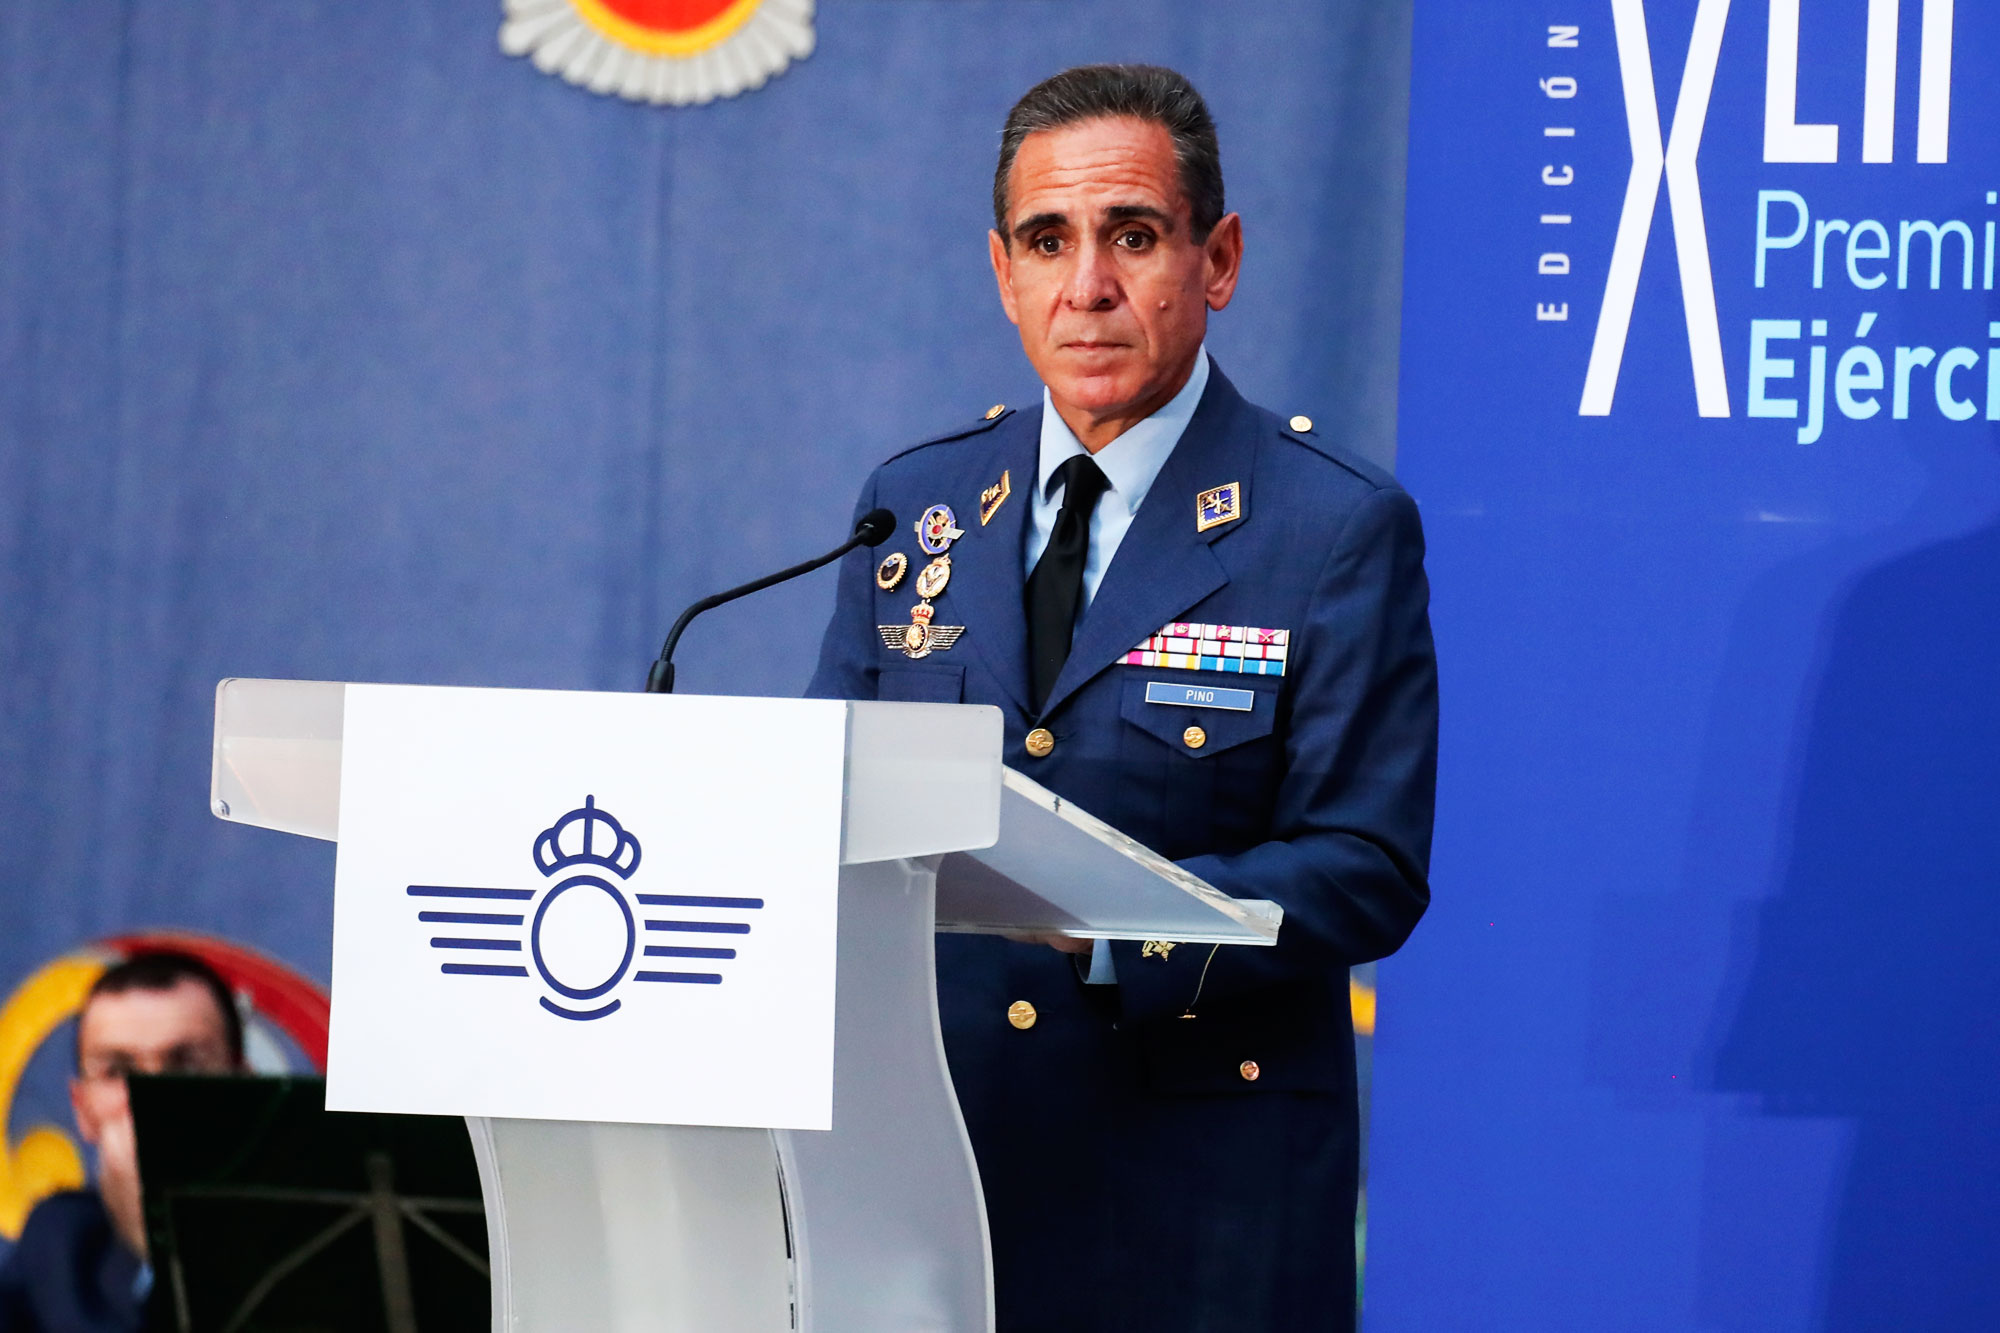 Palabras del general Pino Salas respresentando a los premiados